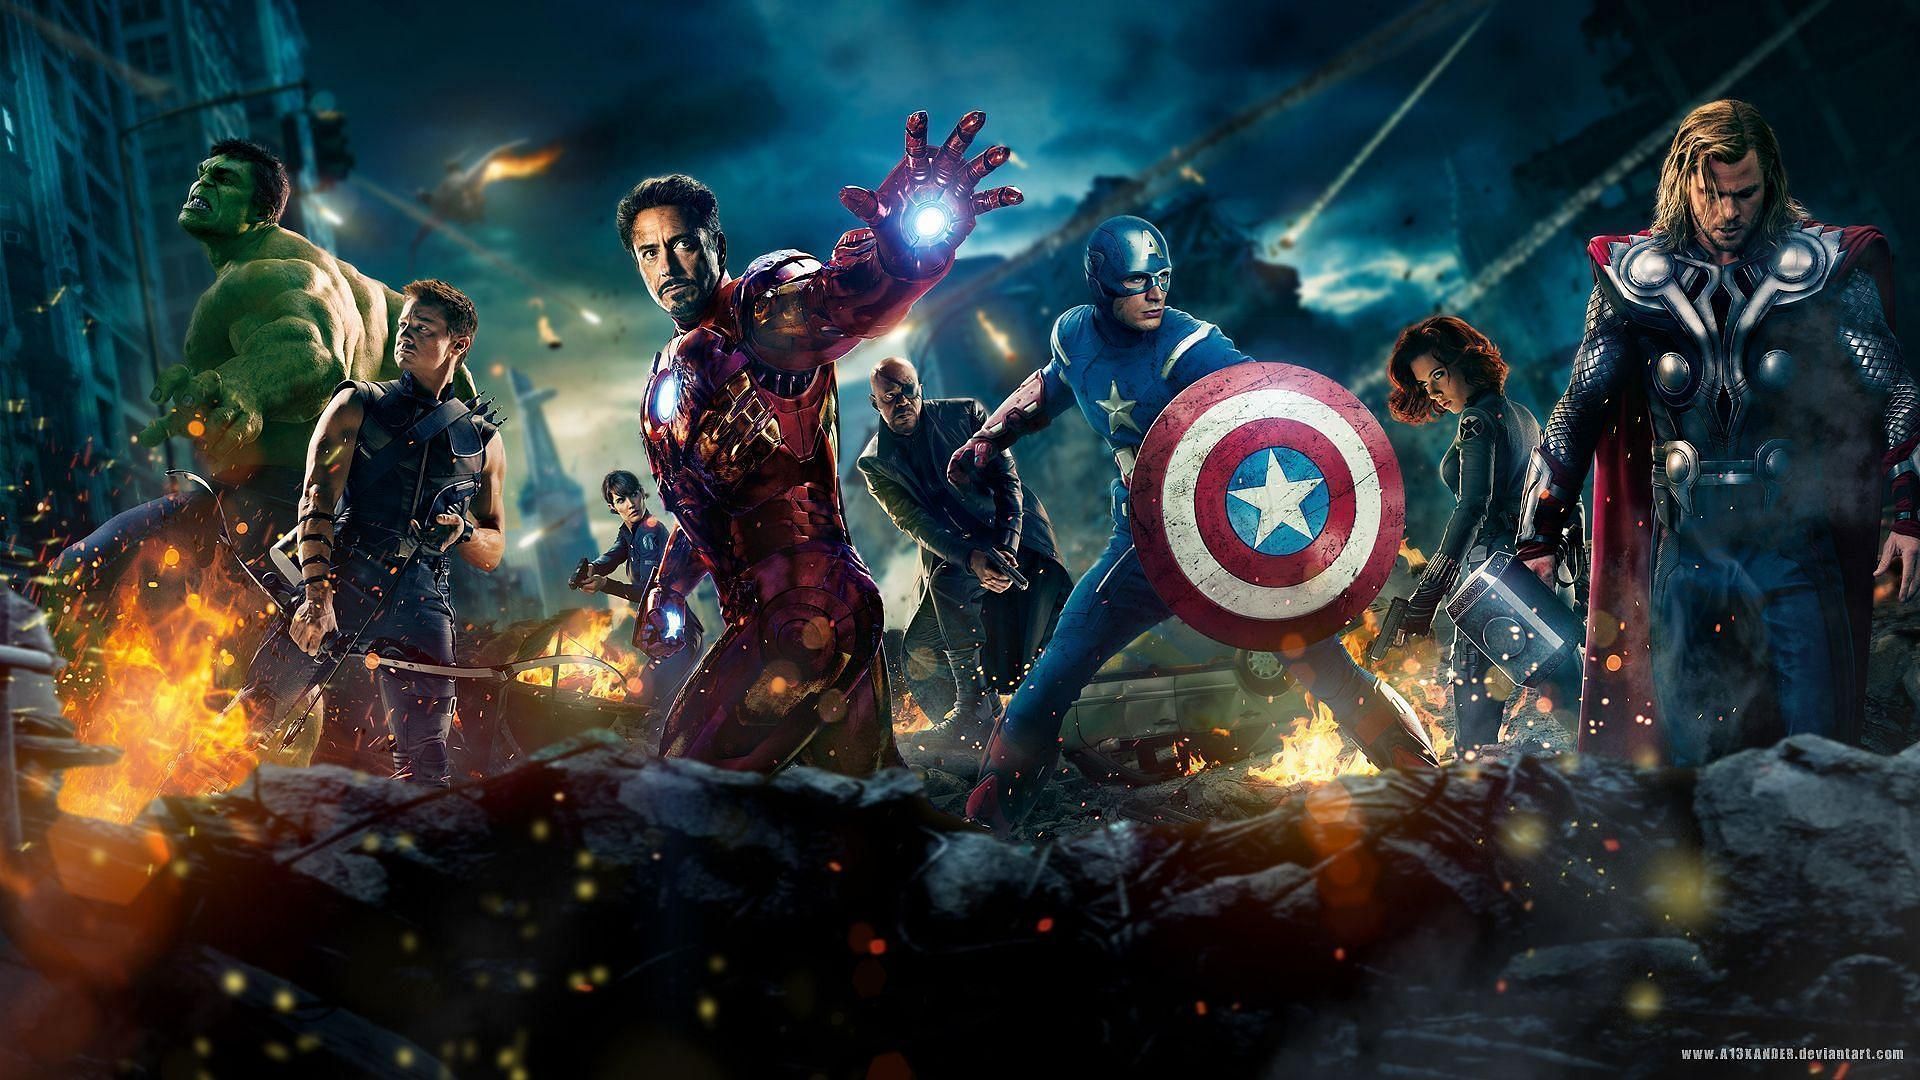 The Avengers (Image via Marvel)